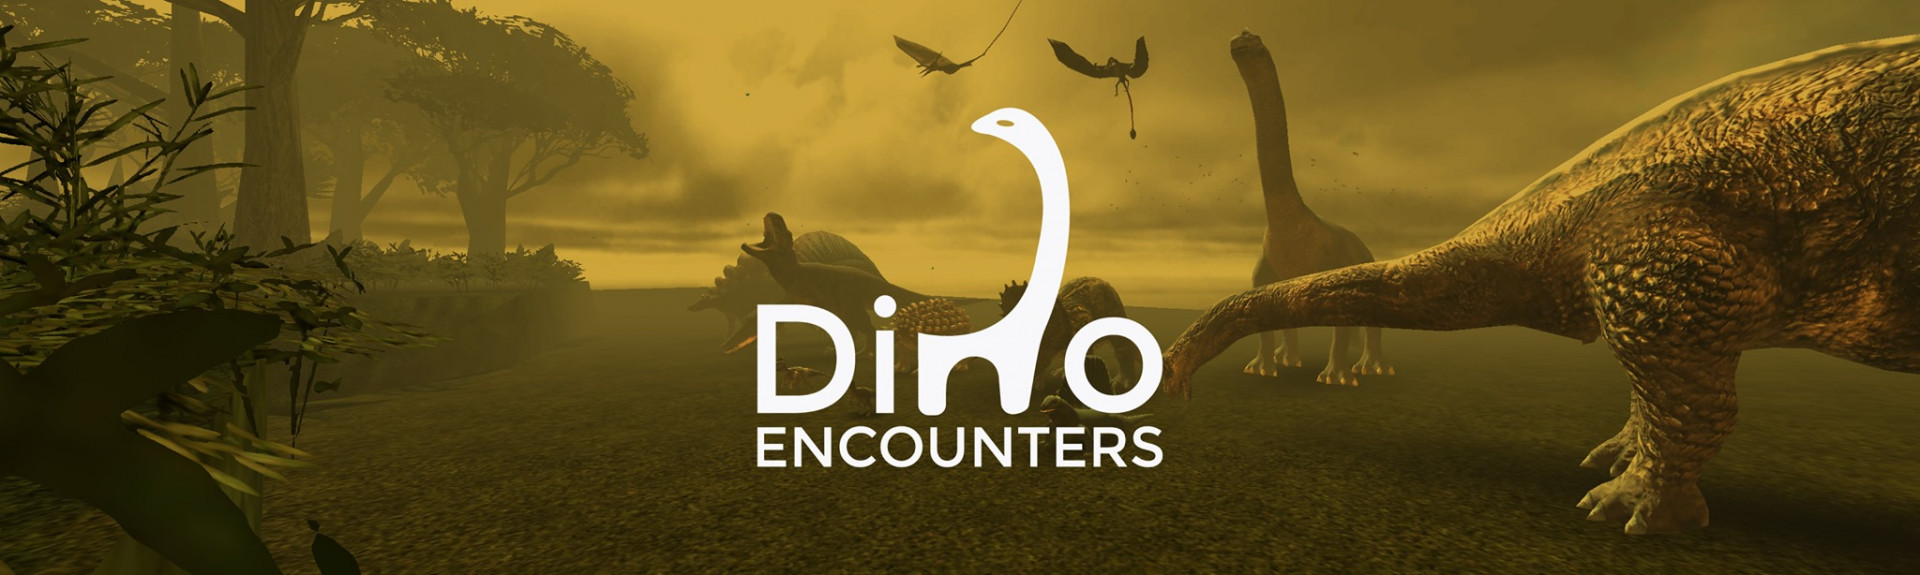 Encuentros con Dinosaurios